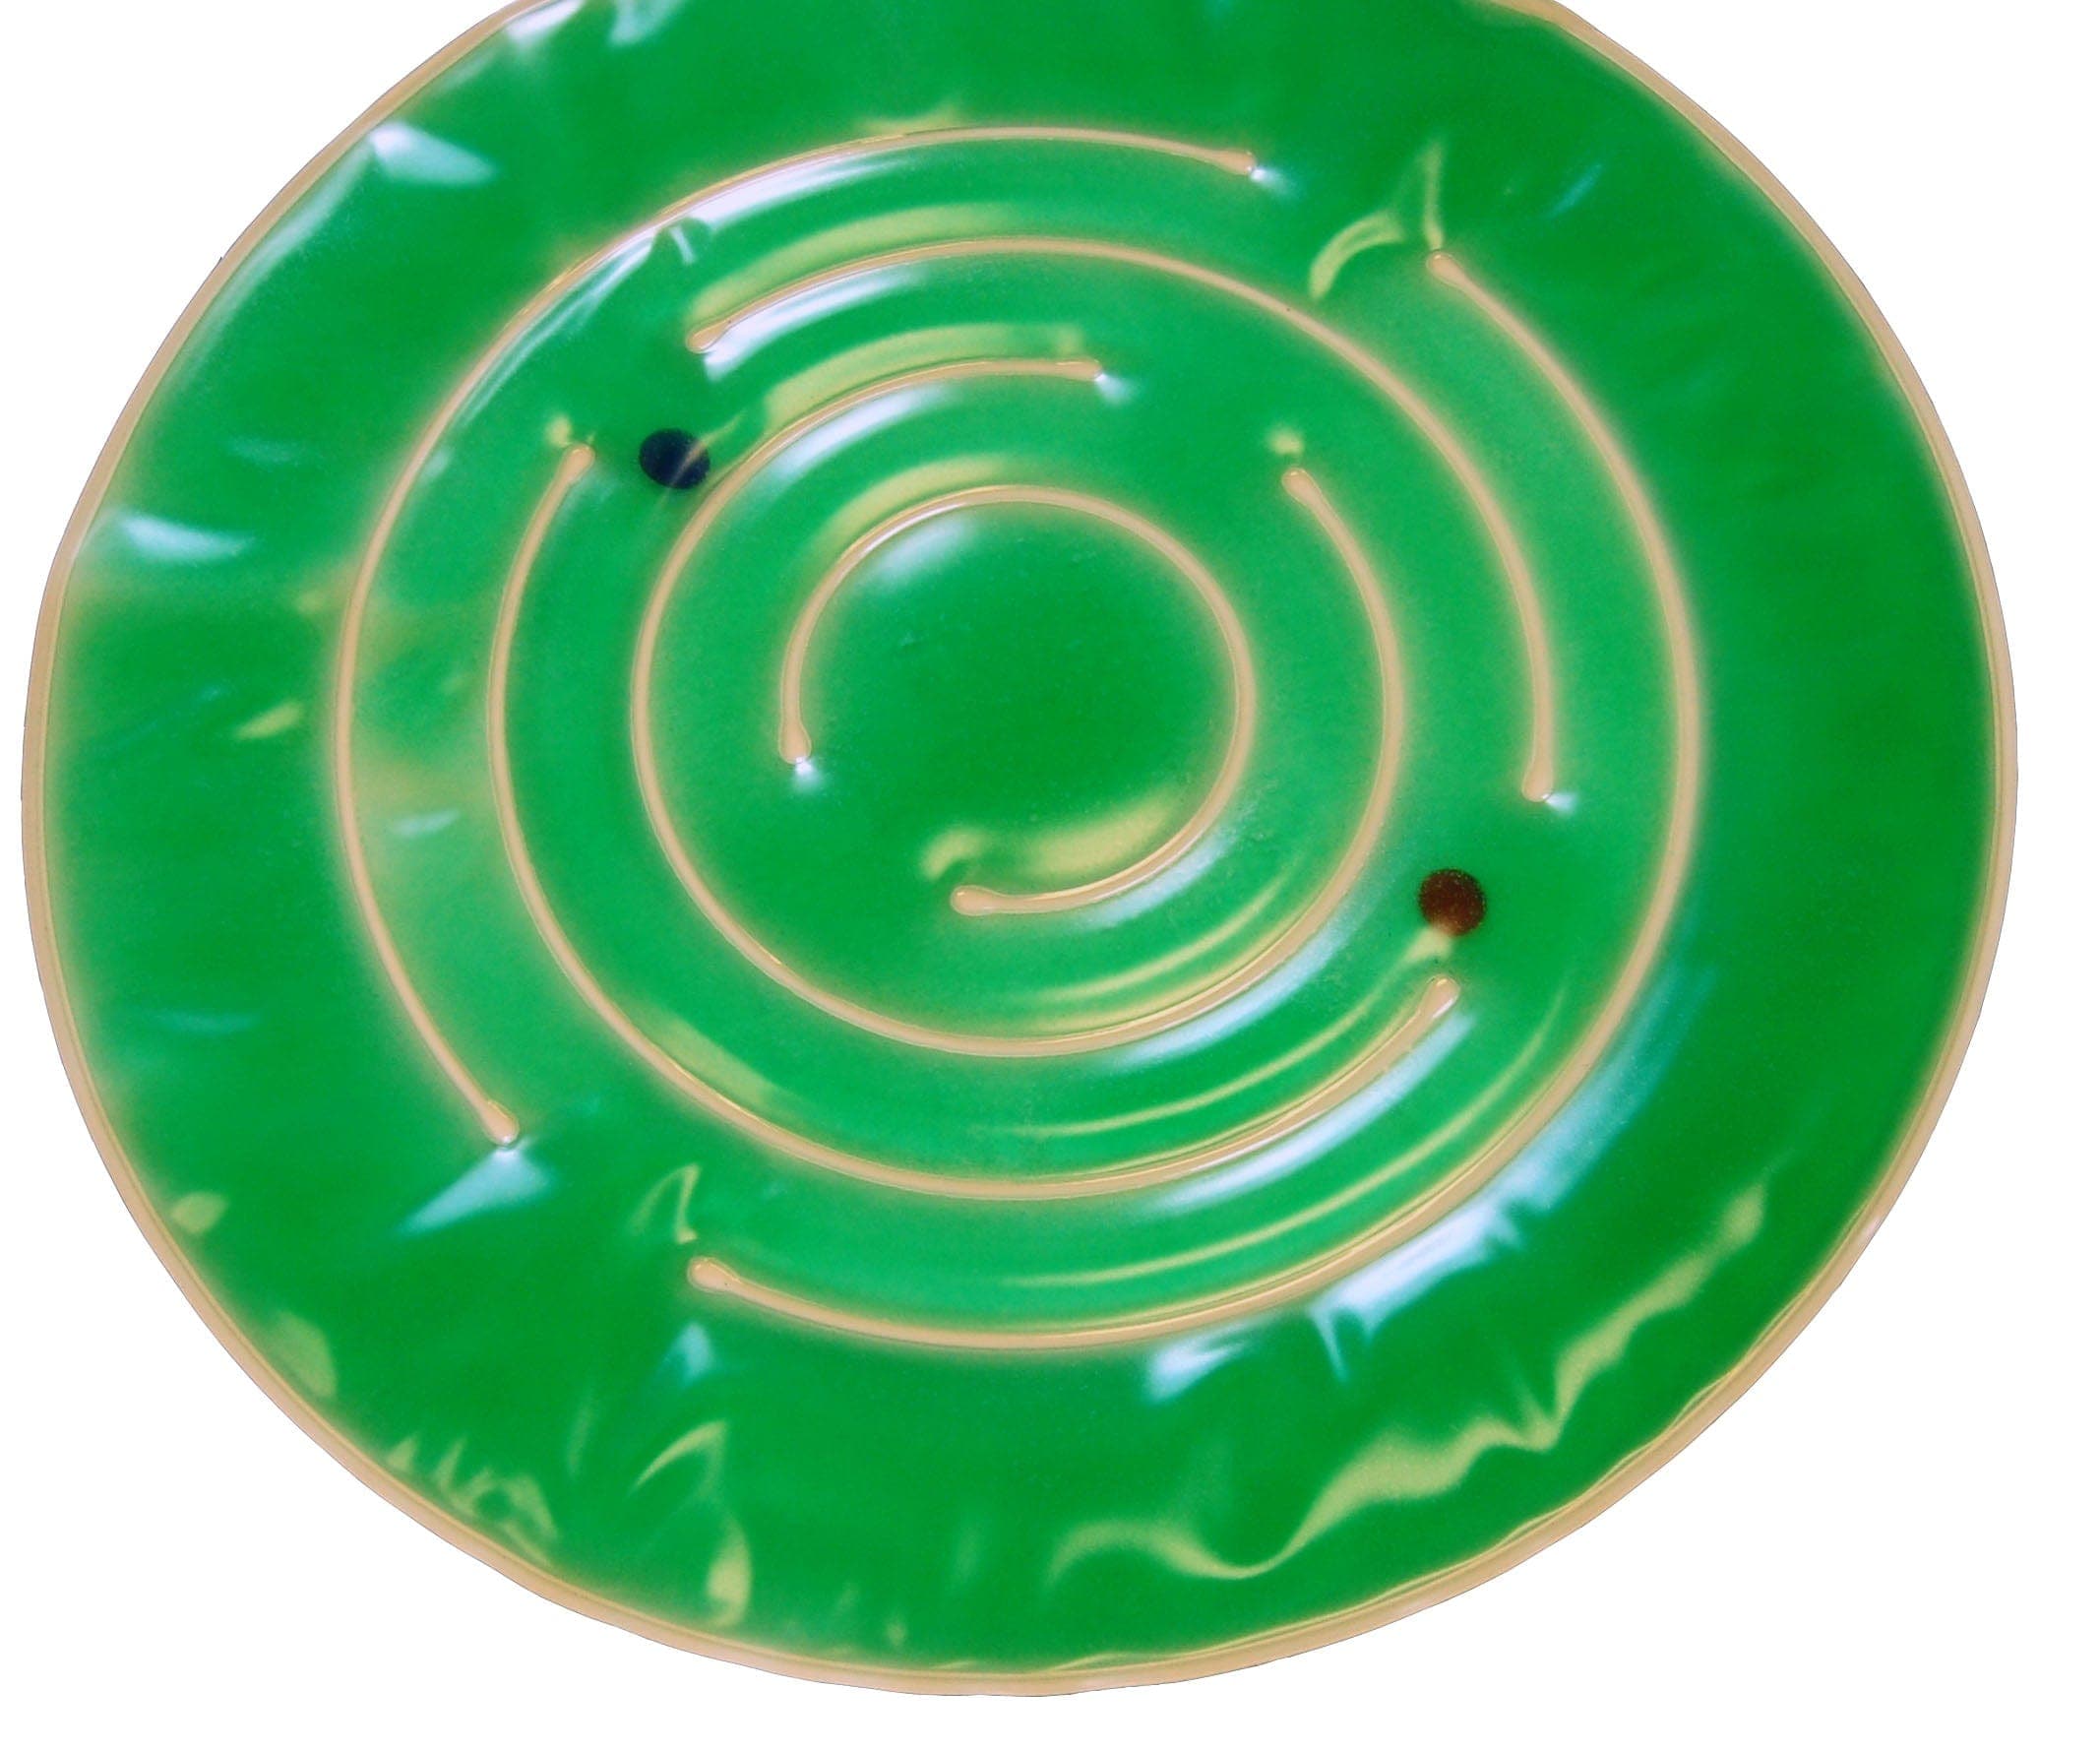 SkilCare Sensory Integration Green SkilCare Gel Spiral - Blue